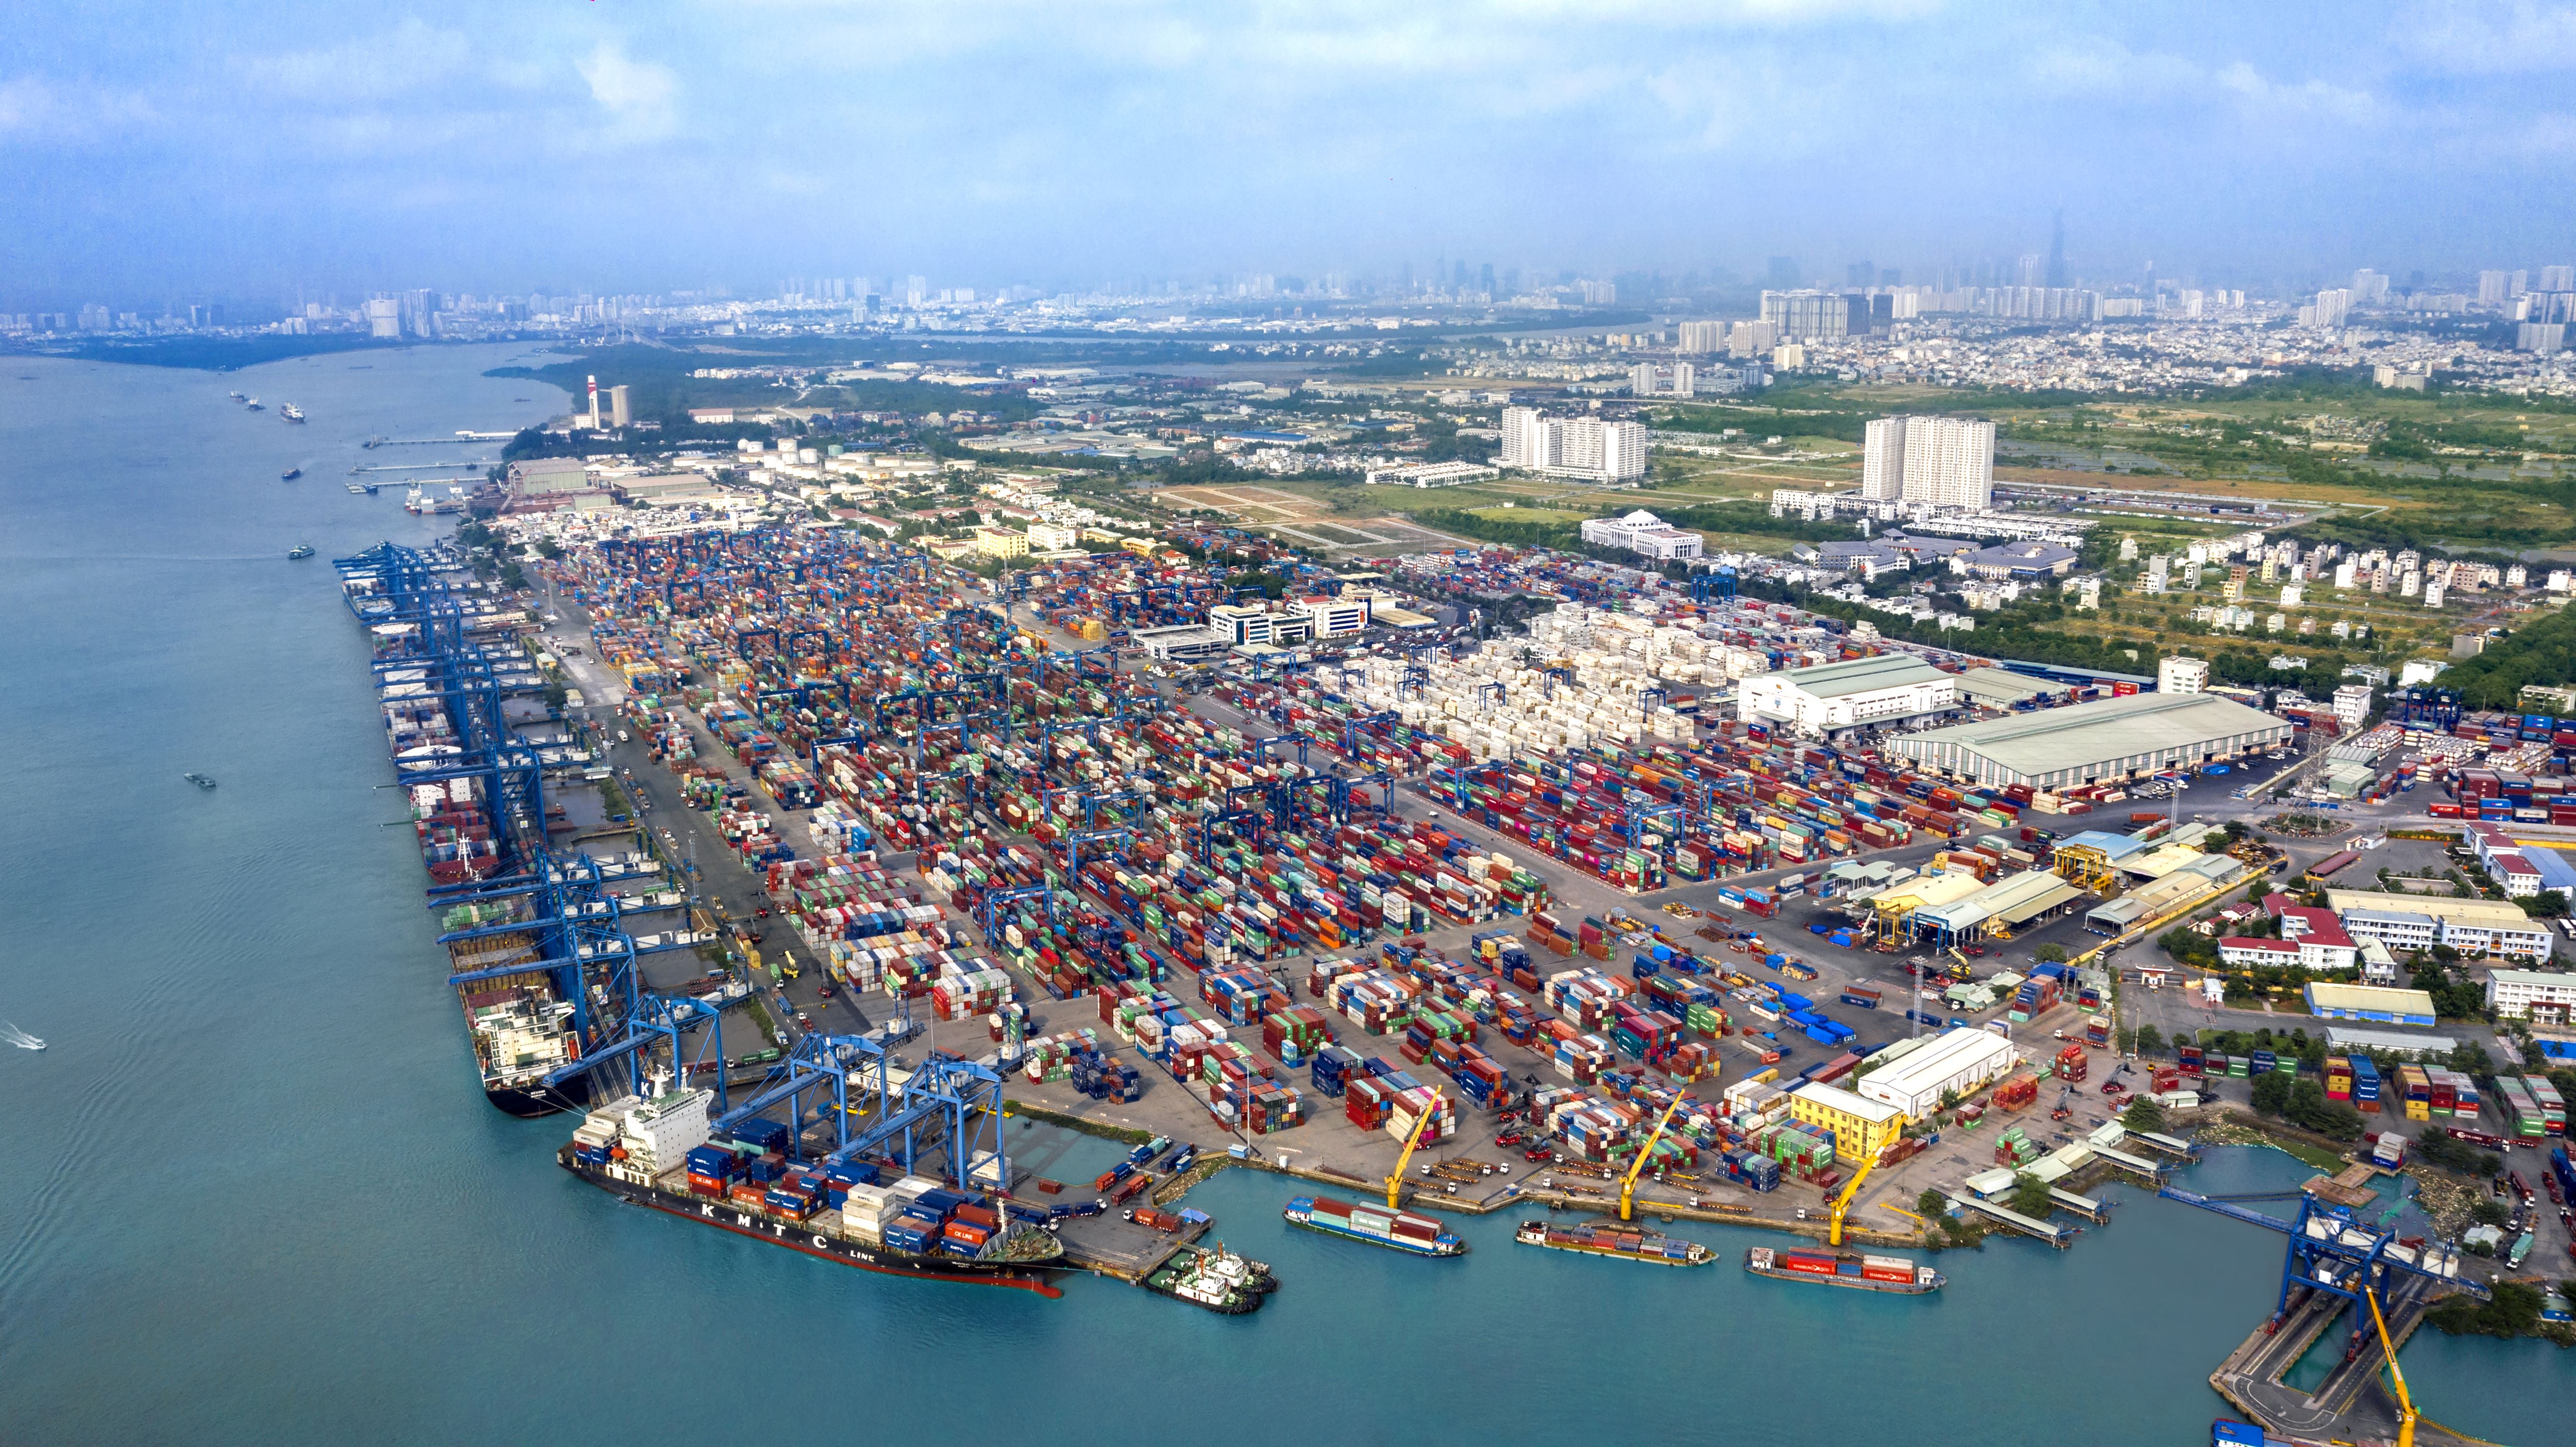 TP Thủ Đức còn có khu cảng quốc tế Tân Cảng- Cát Lái hiện đại và lớn nhất cả nước. Đây là cảng vận chuyển hàng hóa trong nước và quốc tế, có vị trí quan trọng trong vùng kinh tế trọng điểm phía Nam.